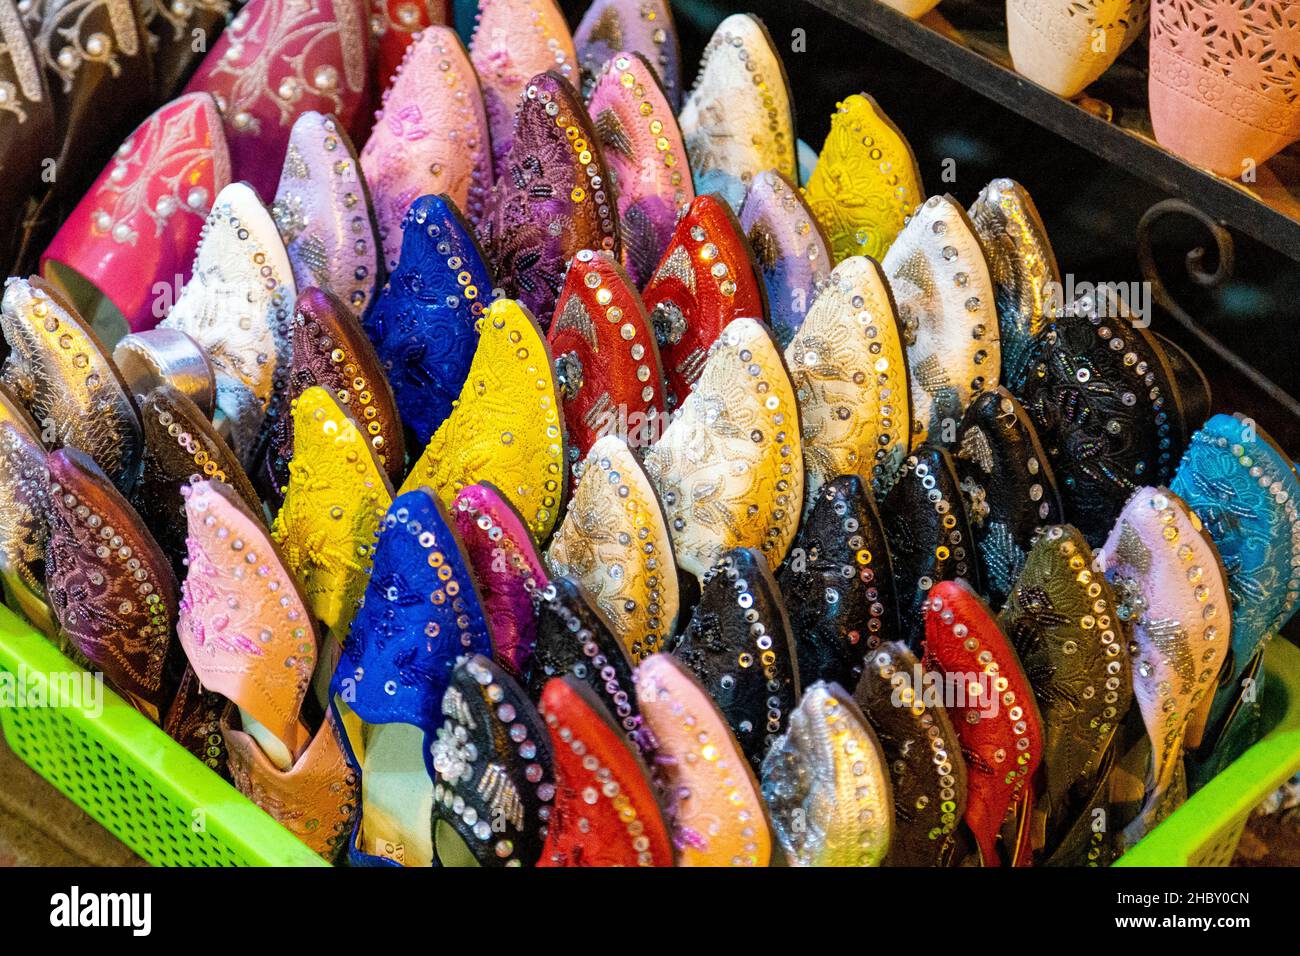 Sélection de plats traditionnels marocains colorés chaussons at a market stall dans la médiane des souks de Marrakech, Maroc Banque D'Images